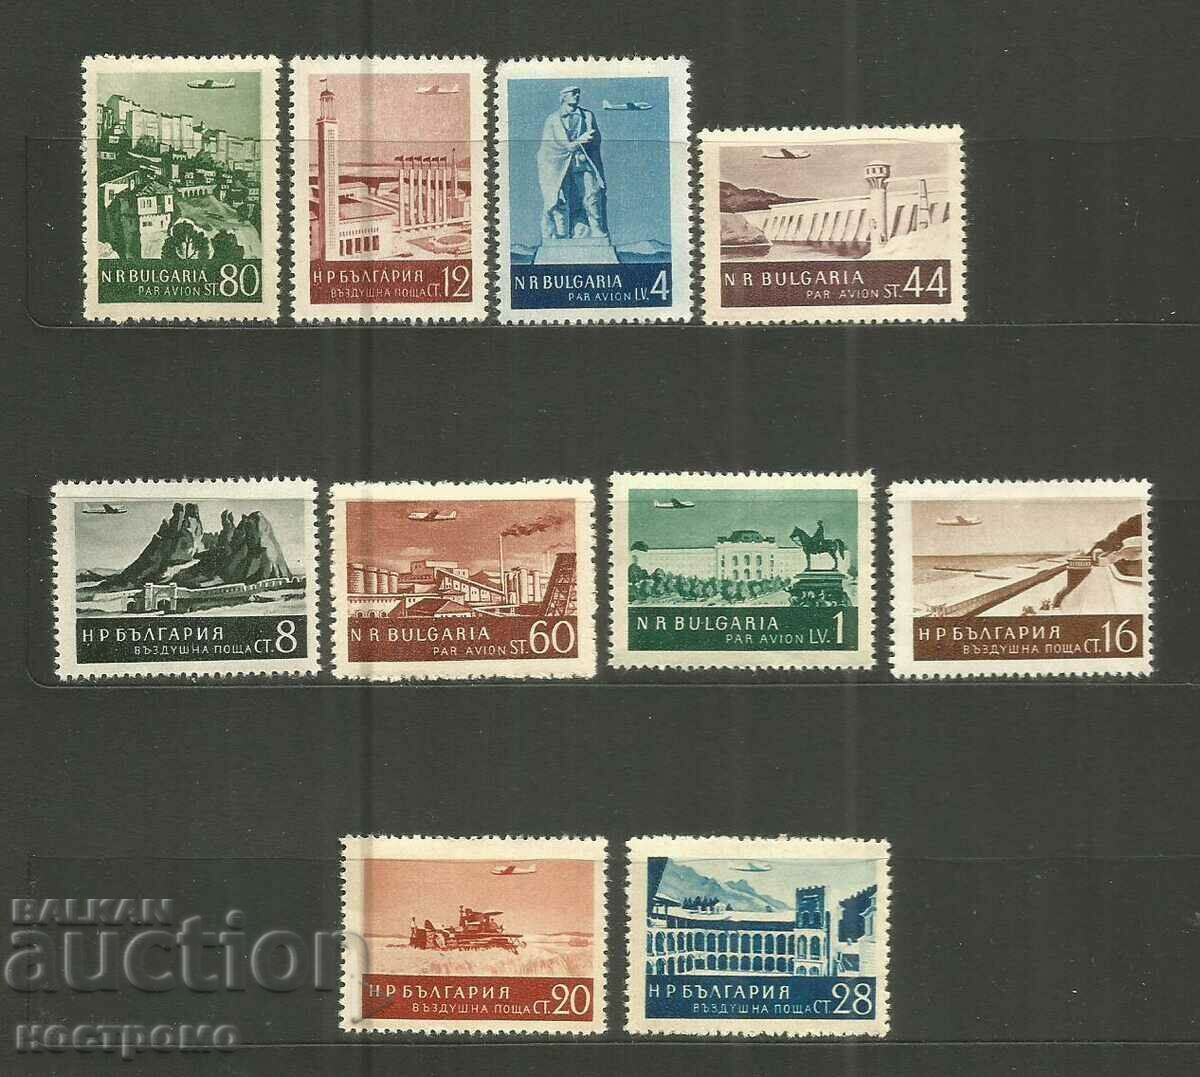 Poștă aeriană - MNH Bulgaria - A 3592